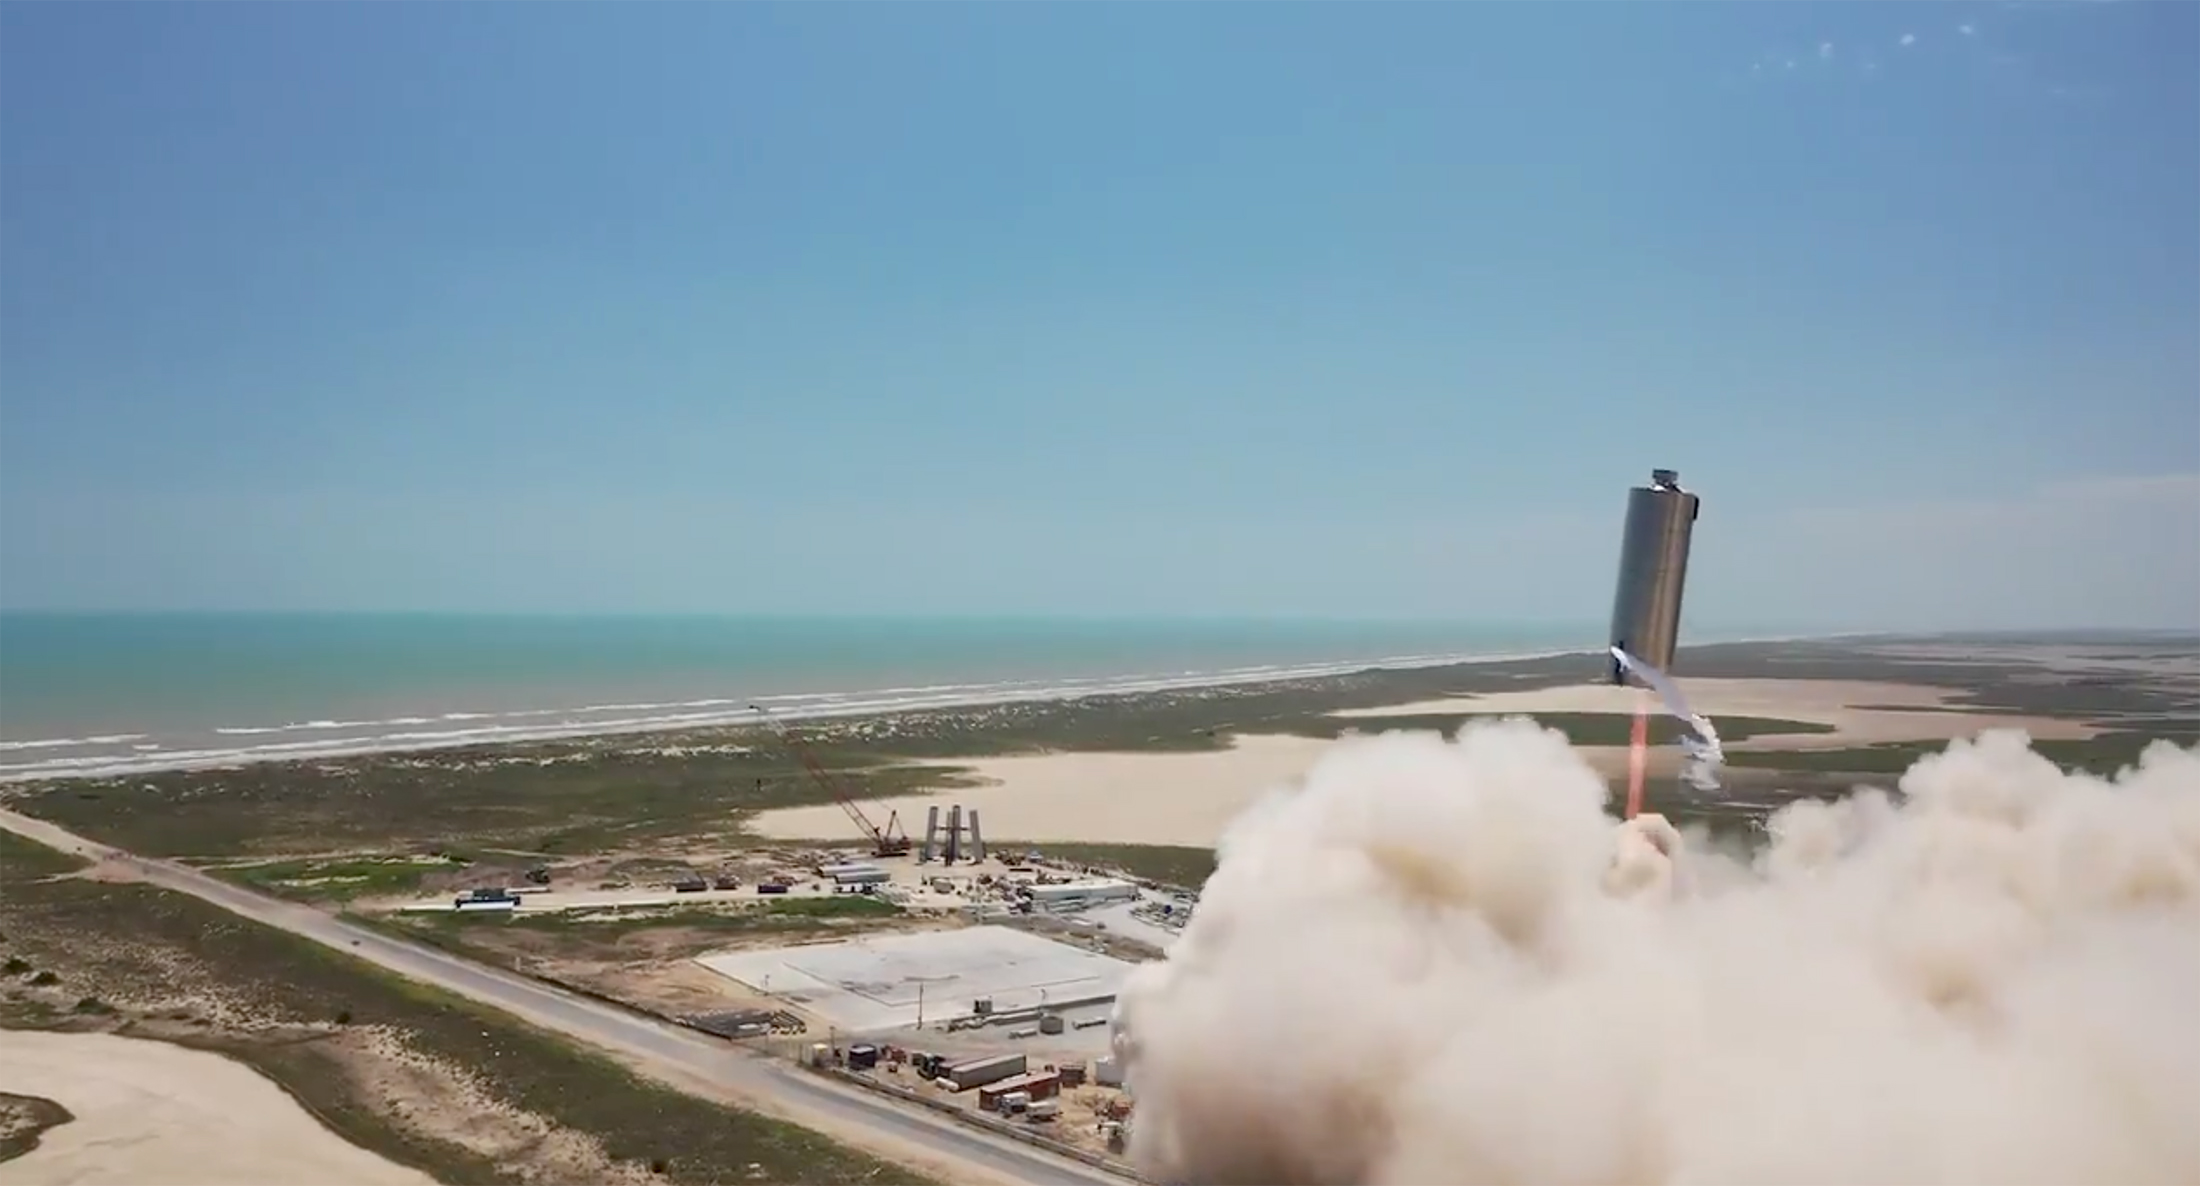 Le SN6 lors de son vol d'essai à 150 mètres de hauteur (septembre 2020). © SpaceX&nbsp;